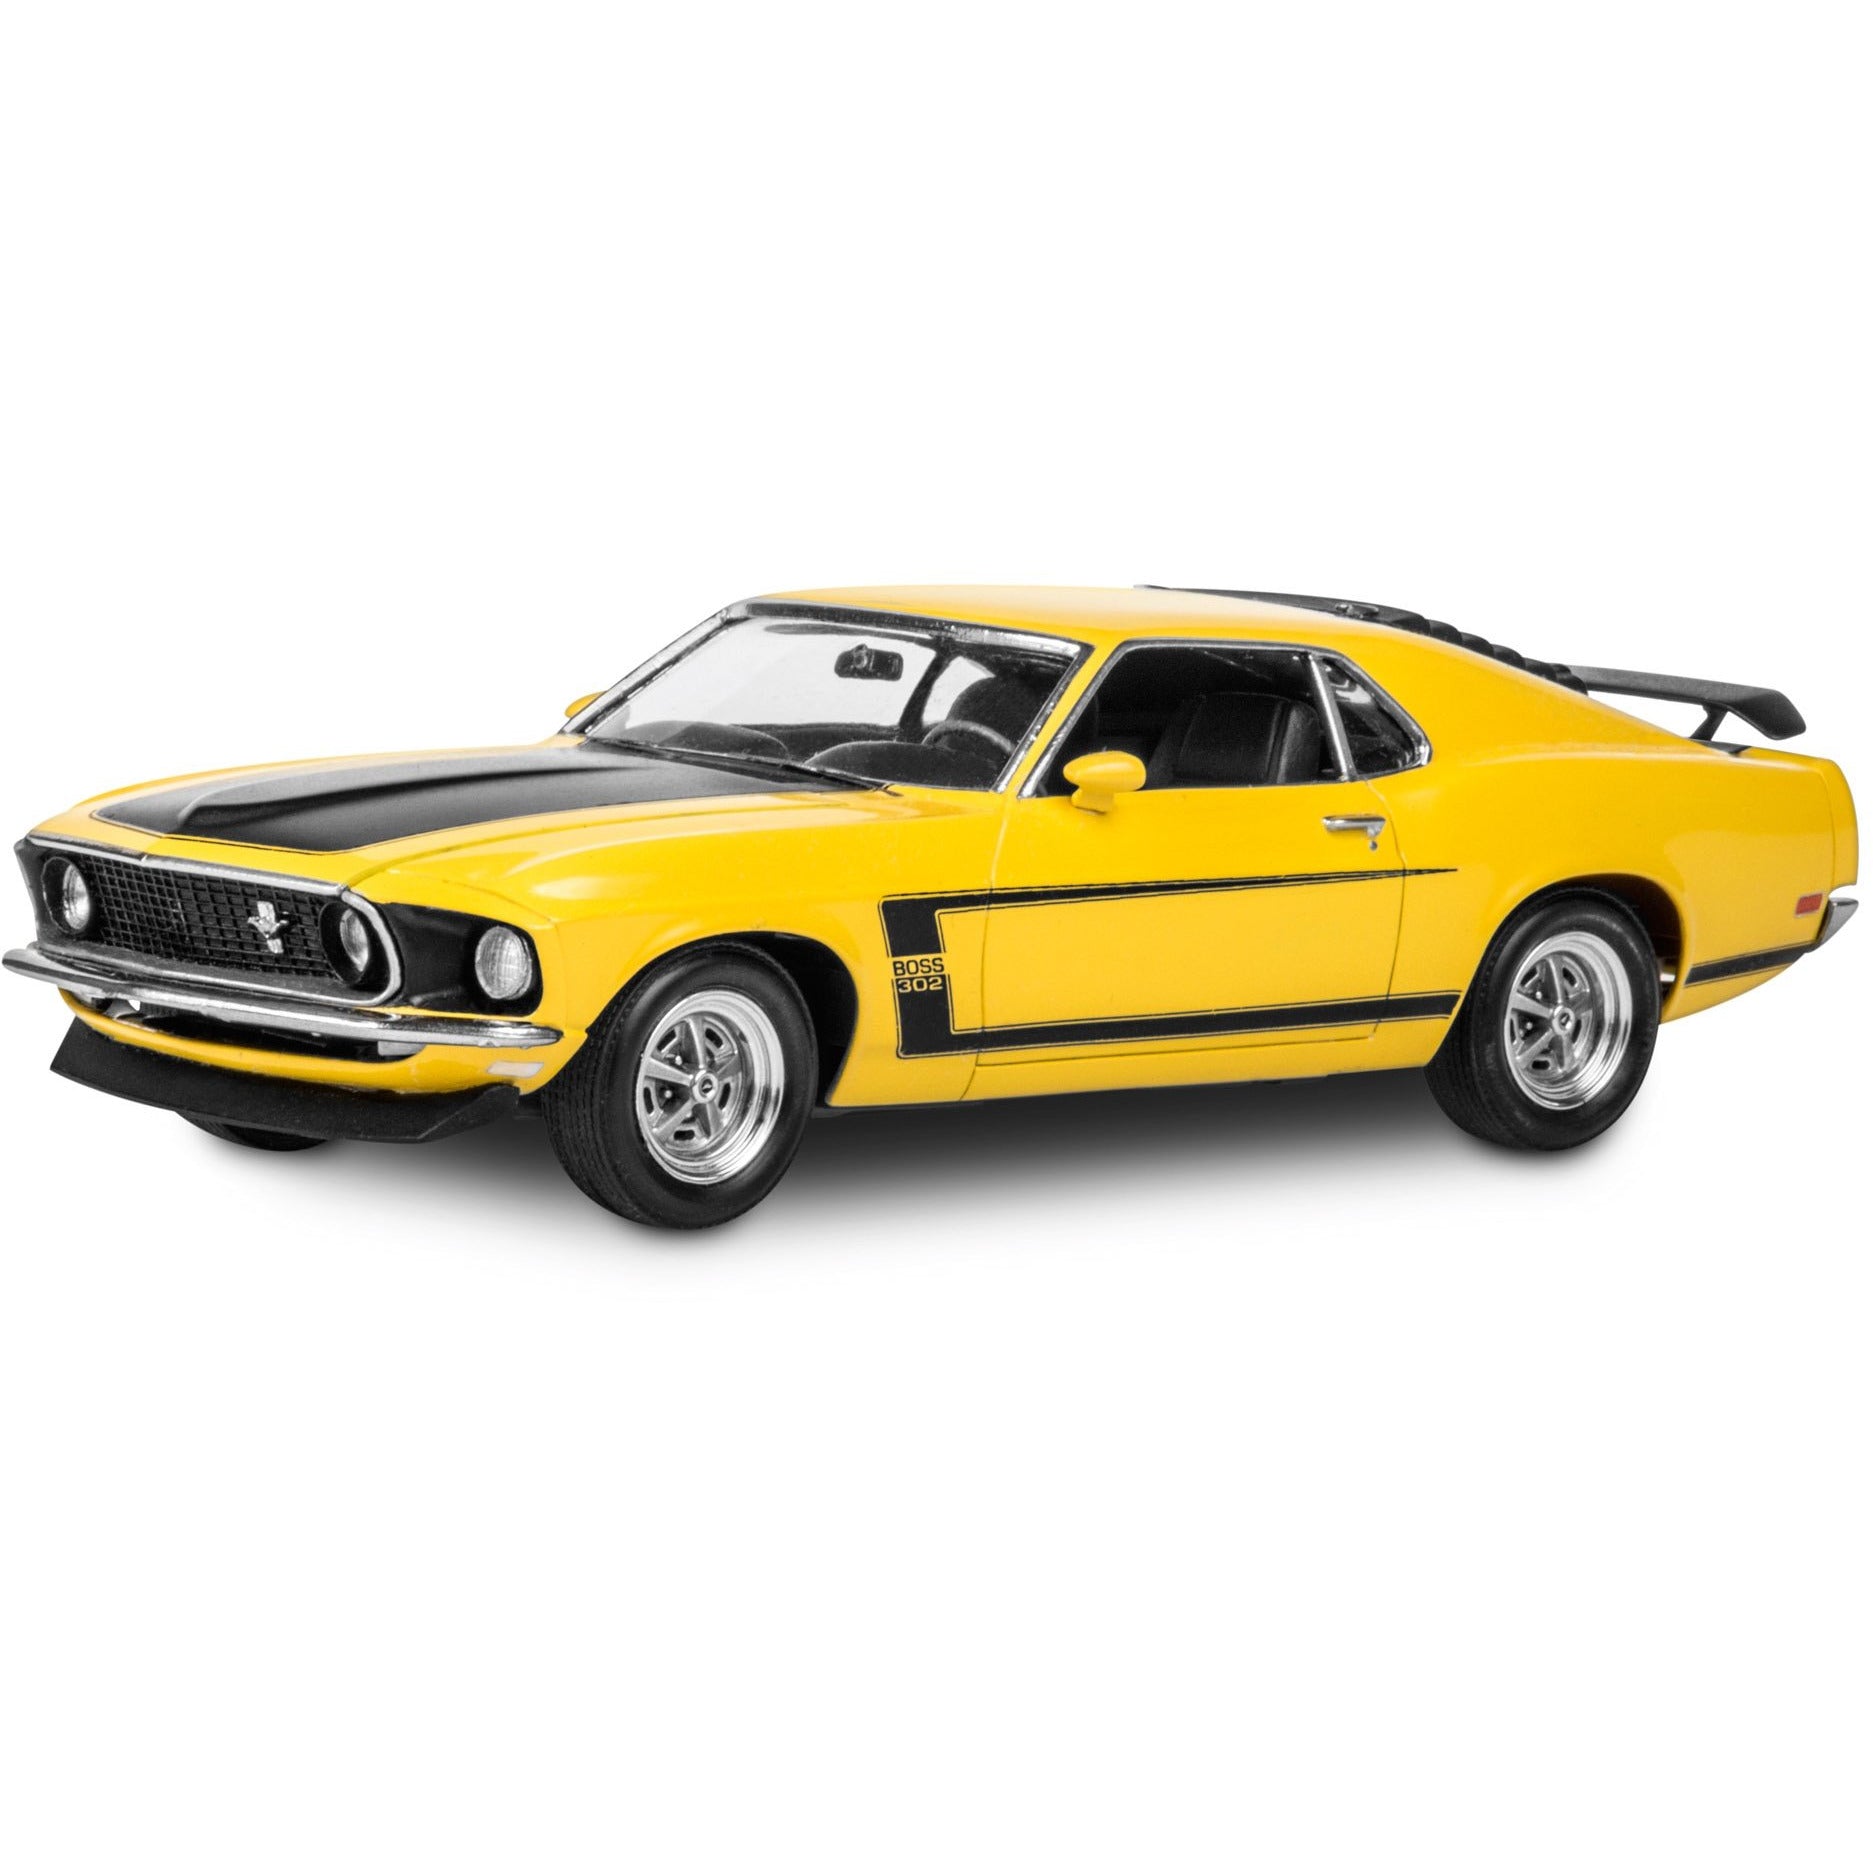 1969 Boss 302 Mustang 1/25 Model Car Kit #4313 by Revell